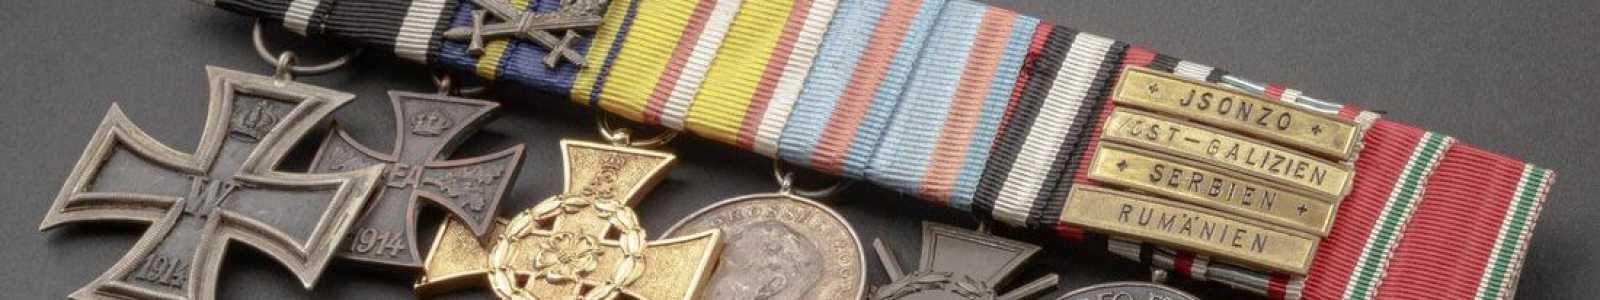 O82m - Médailles internationales et collections historiques